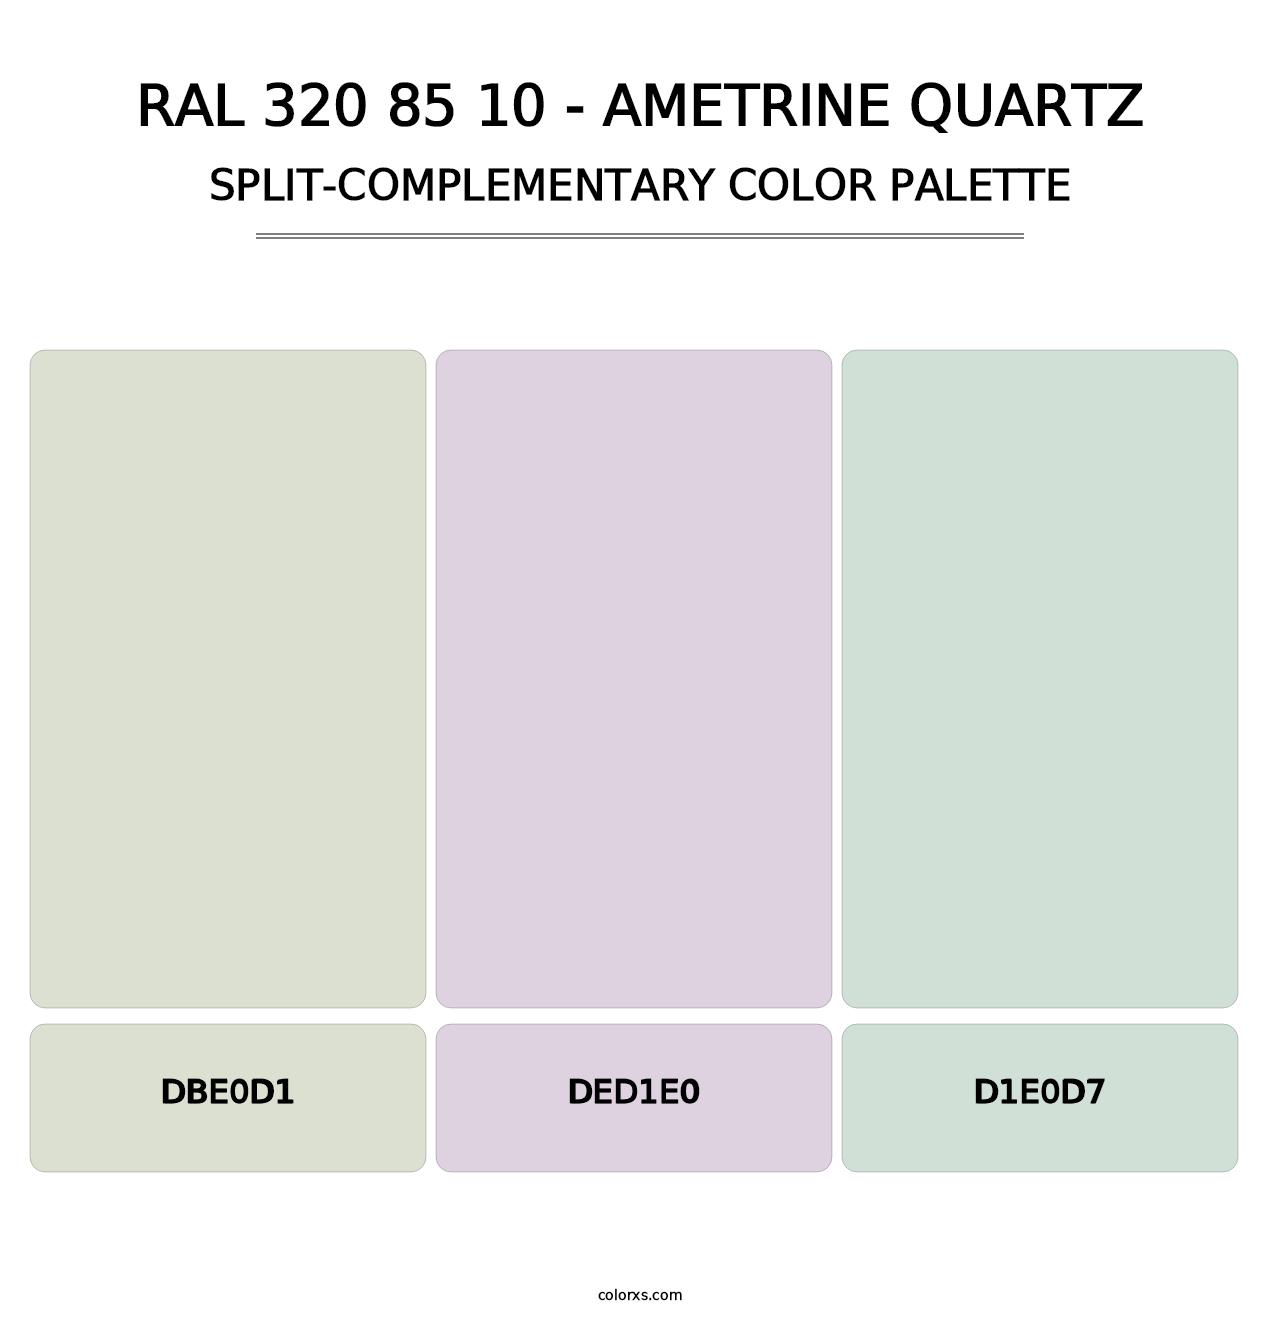 RAL 320 85 10 - Ametrine Quartz - Split-Complementary Color Palette